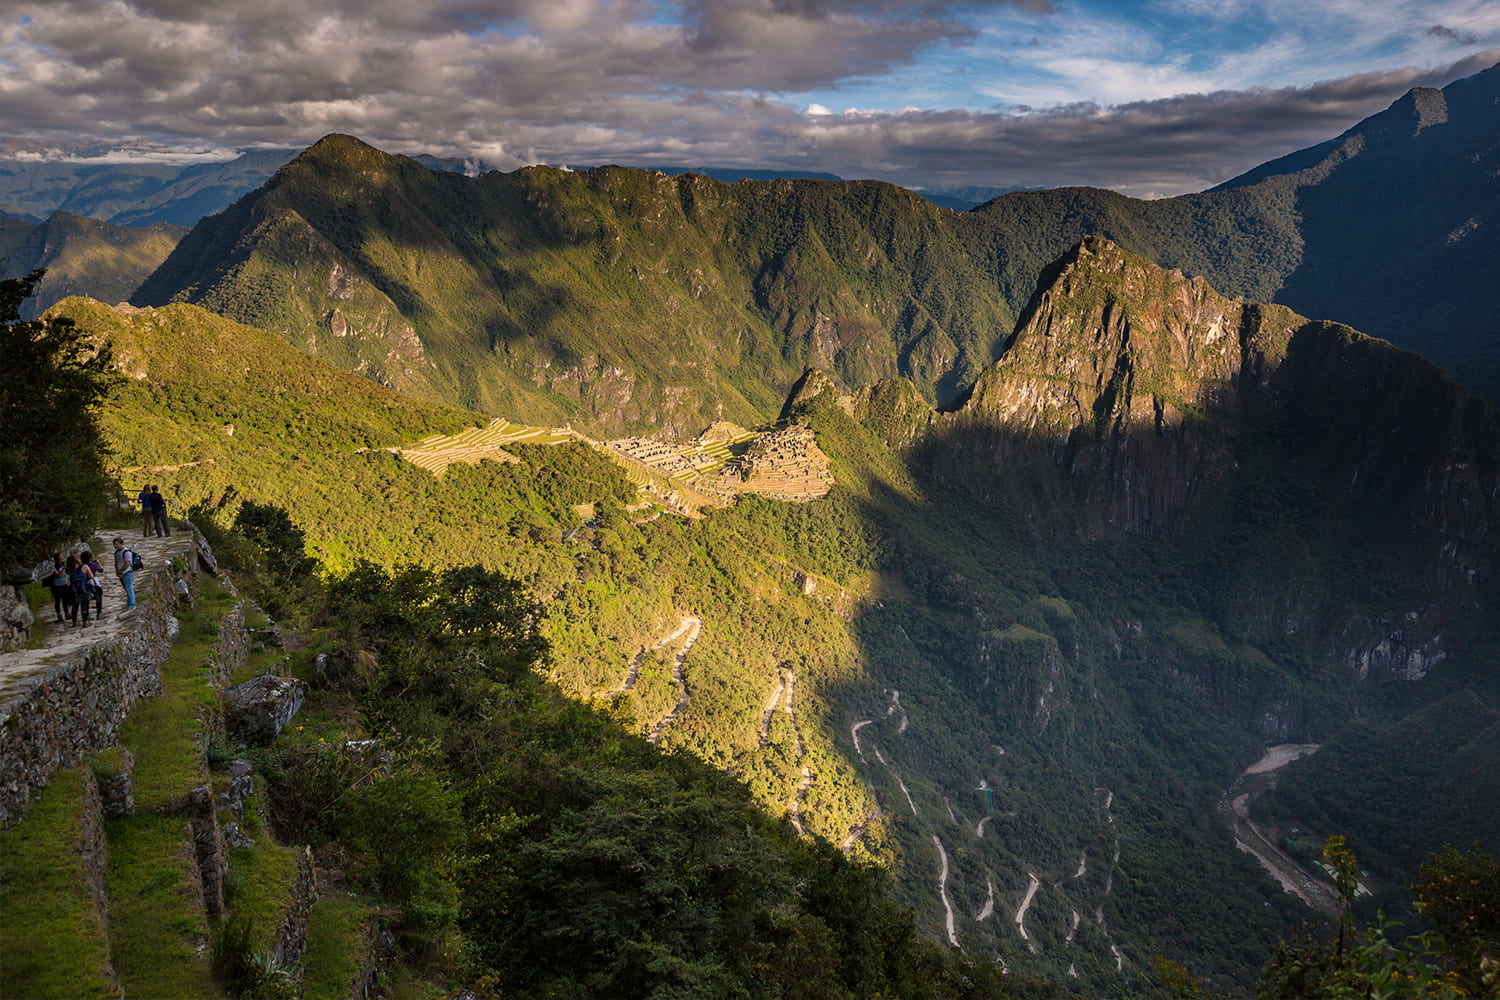 Entrance Machu Picchu – Huchuy Picchu